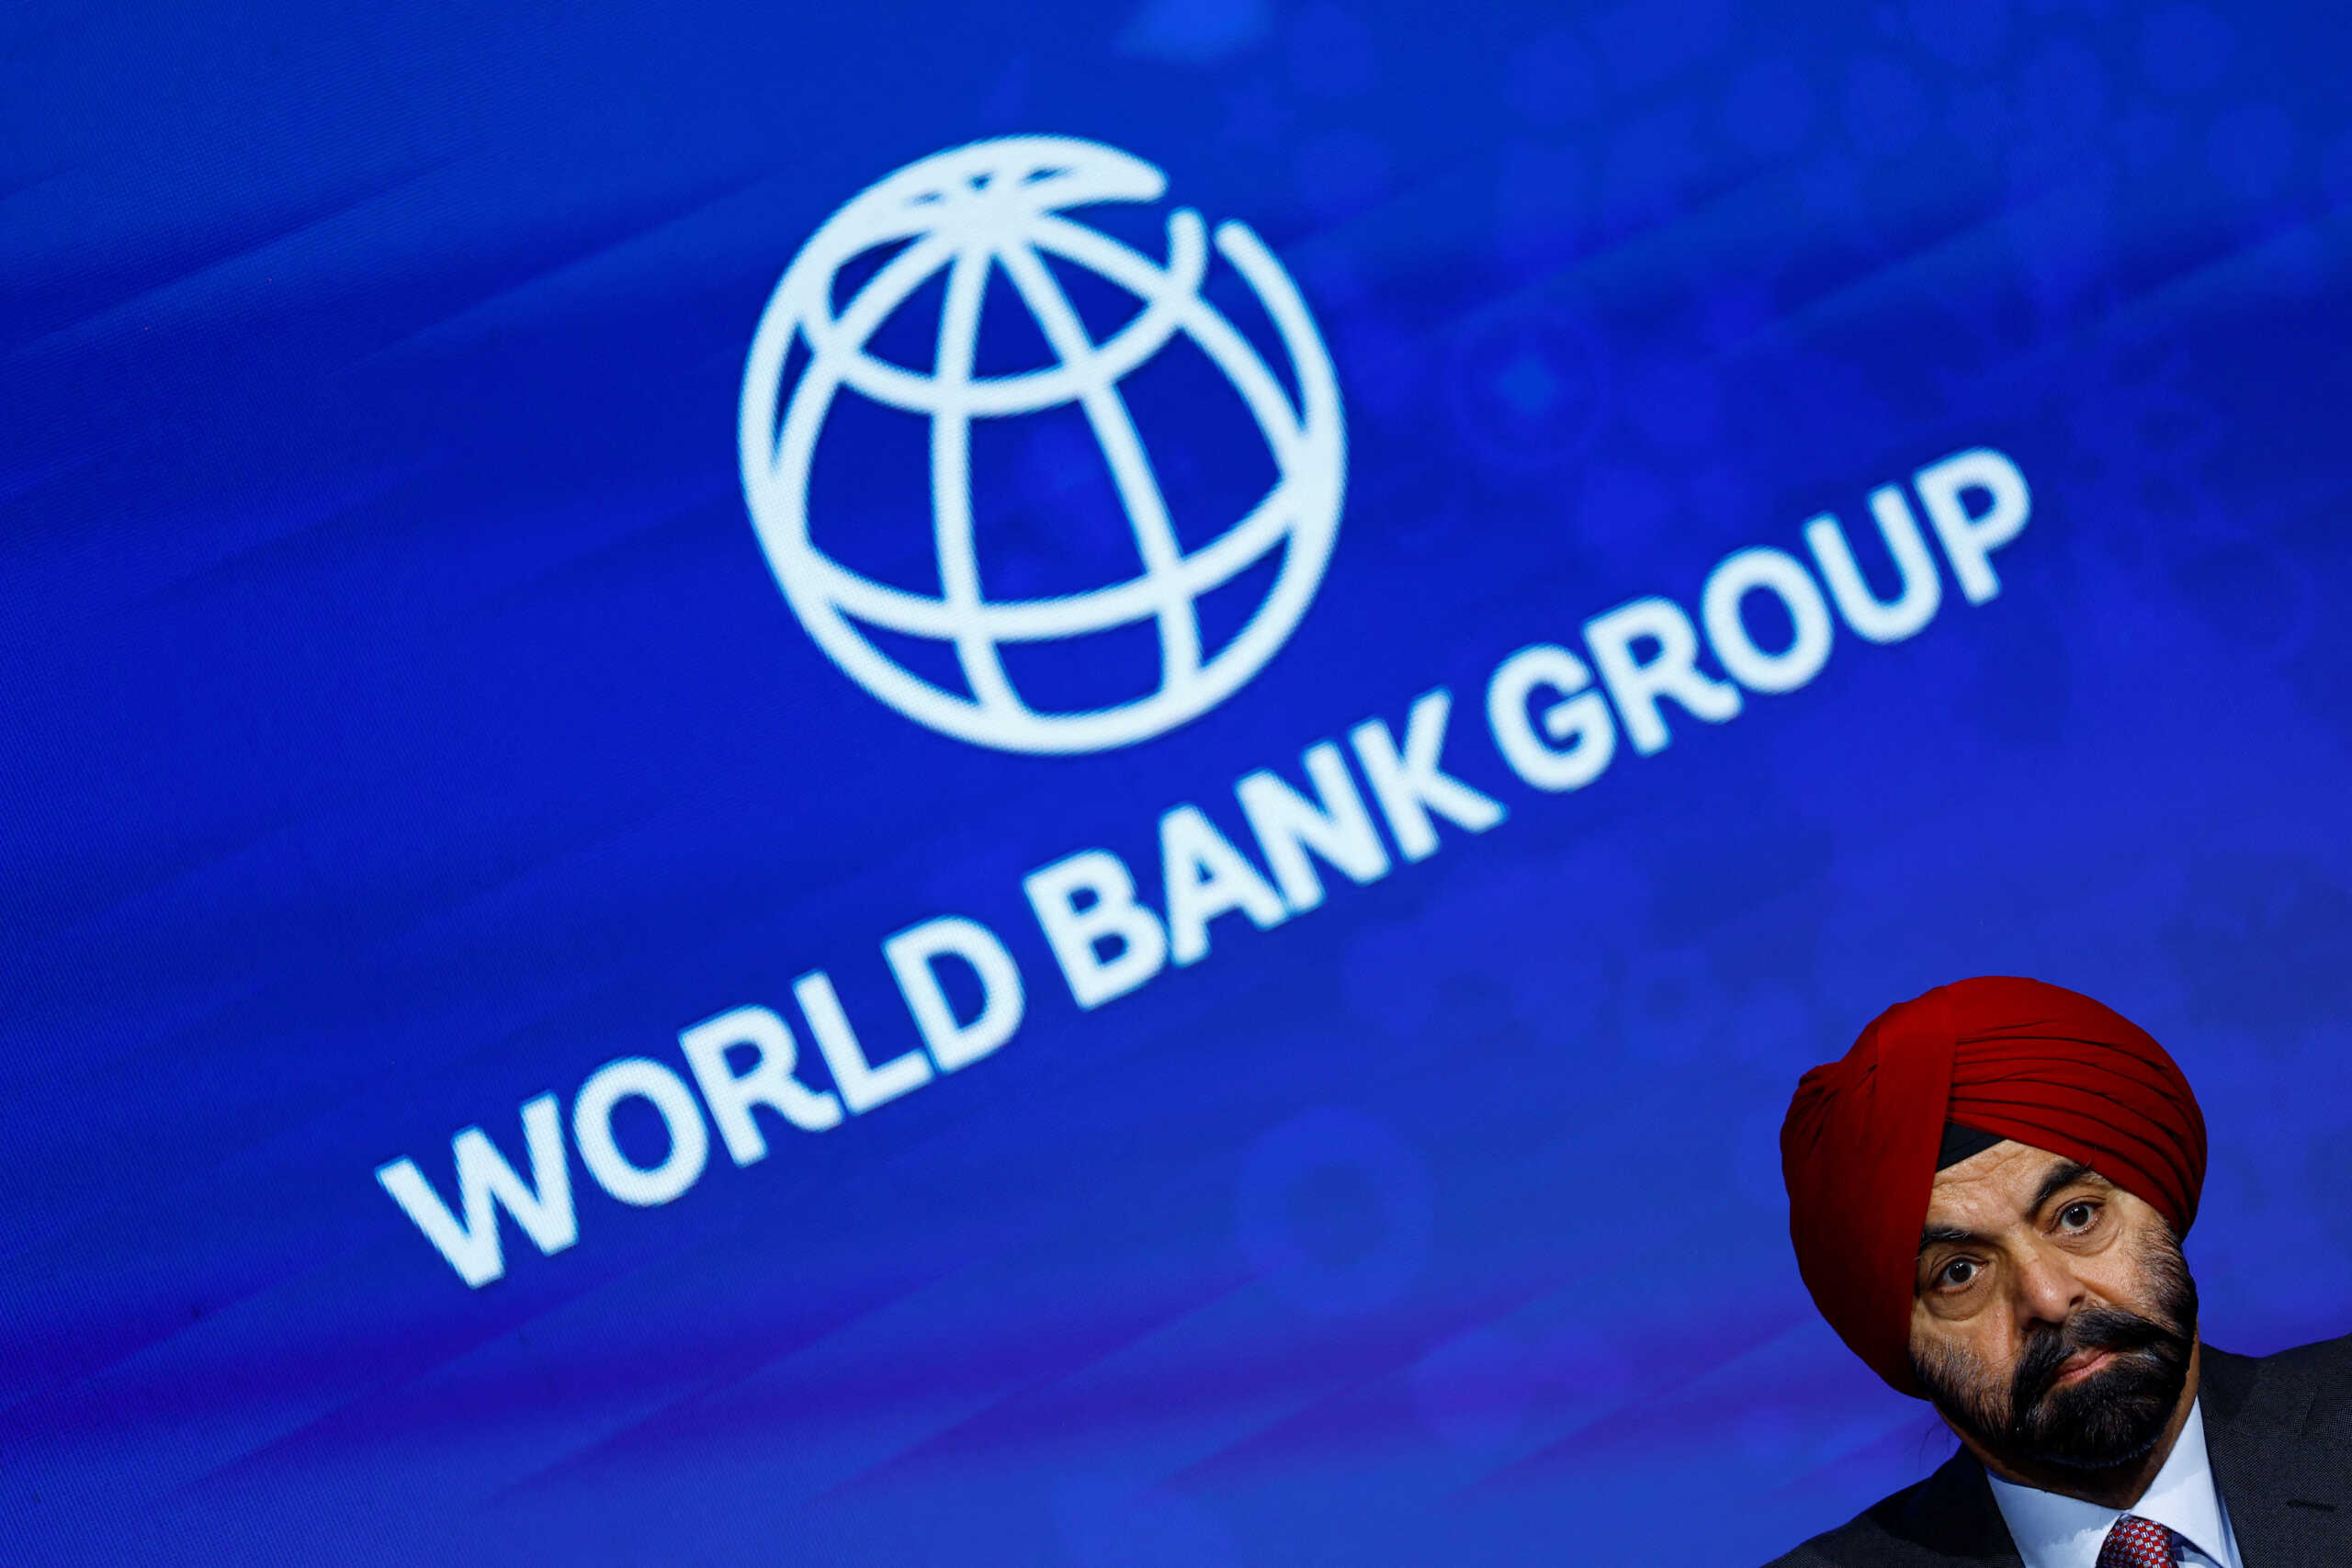 Παγκόσμια Τράπεζα: Νέα προειδοποίηση για την παγκόσμια οικονομία λόγω των γεωπολιτικών εξελίξεων